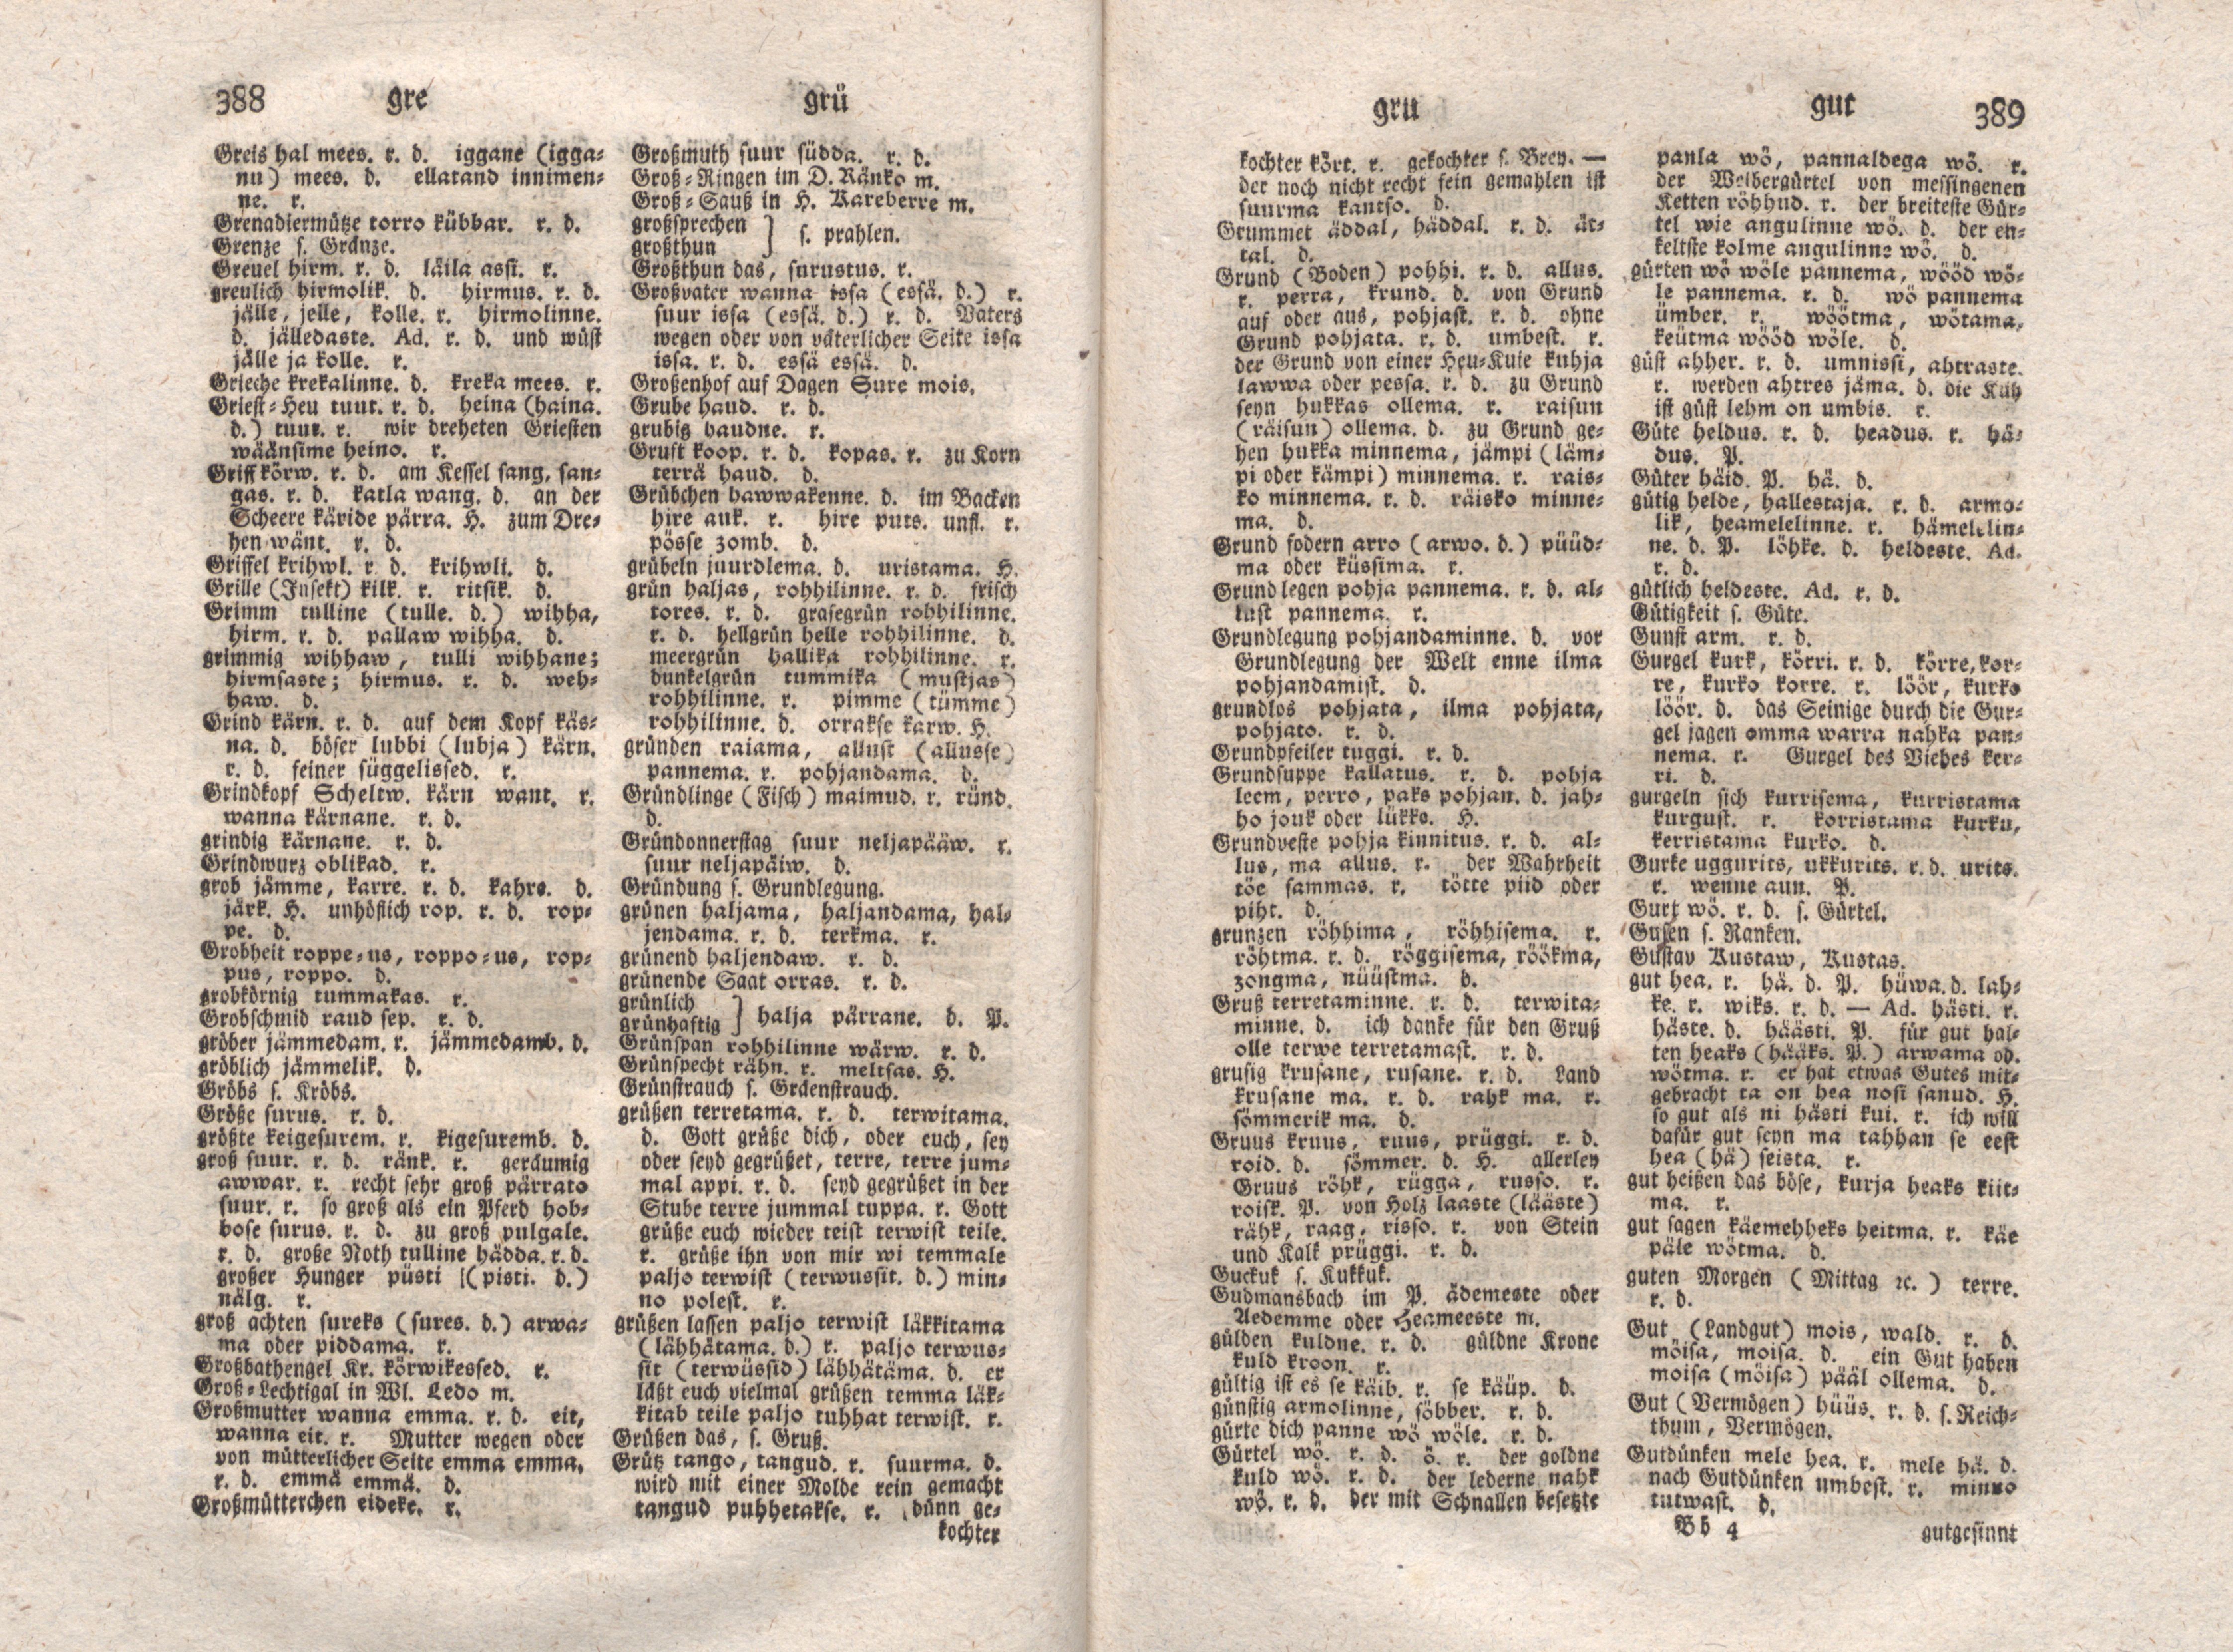 Ehstnische Sprachlehre für beide Hauptdialekte (1780) | 205. (388-389) Haupttext